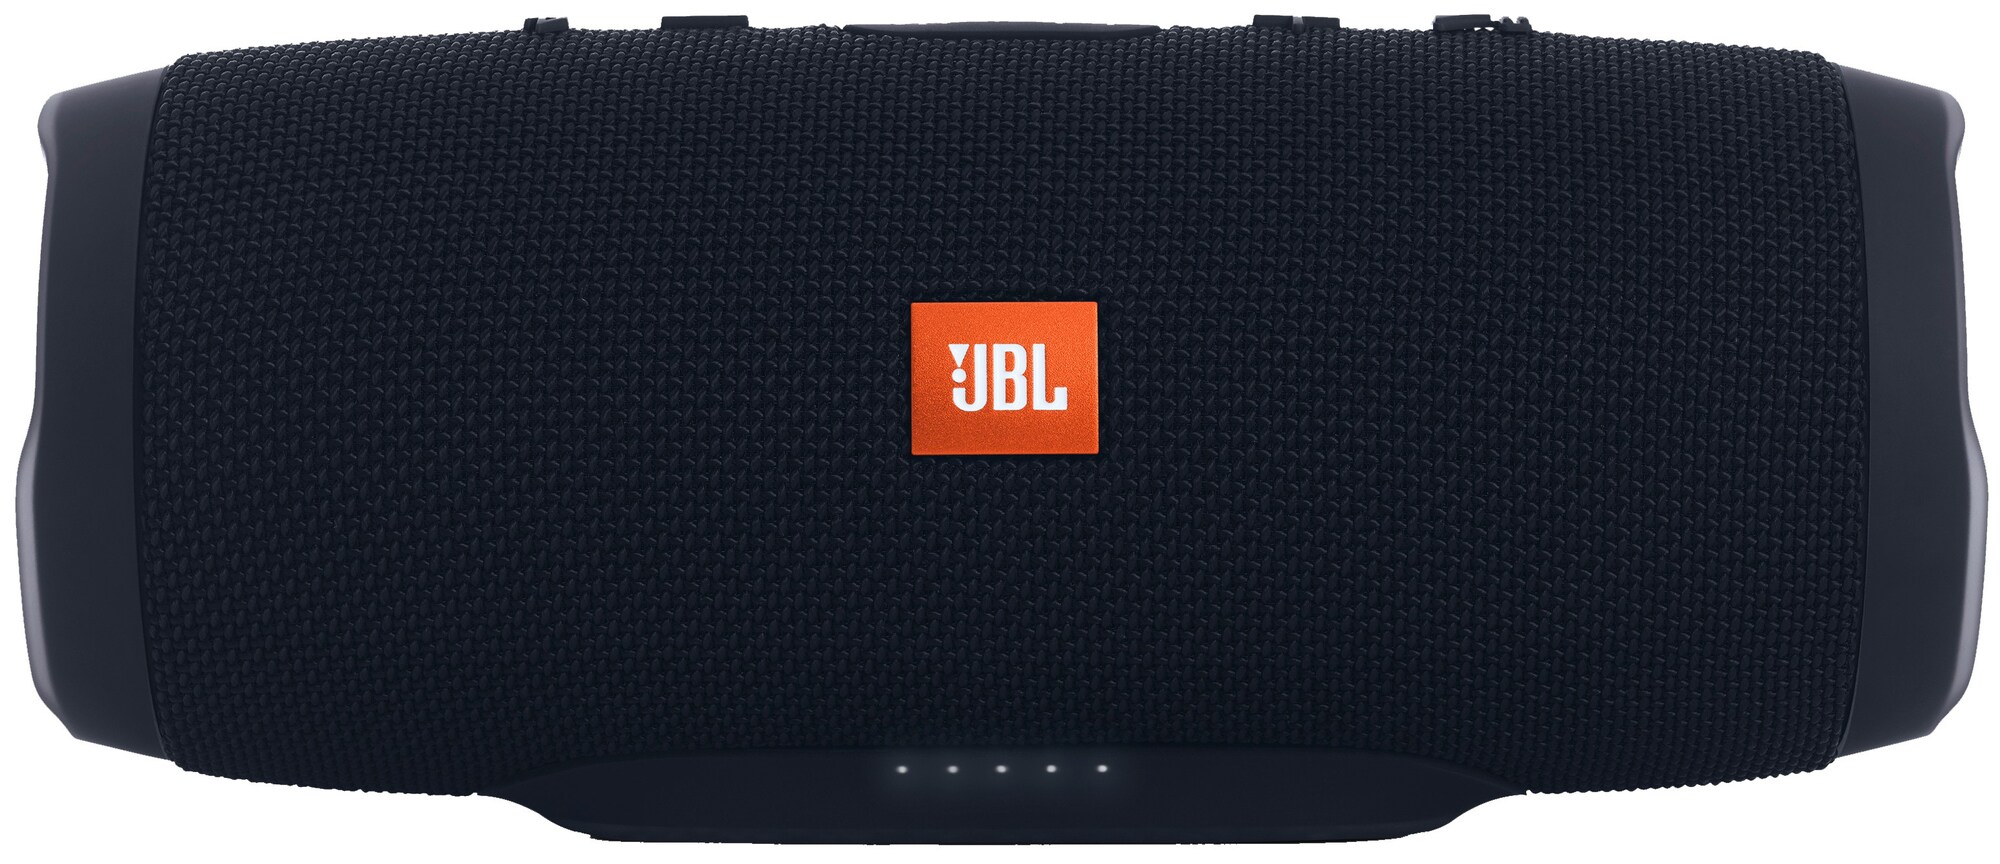 JBL Charge 3 trådløs høyttaler (sort) - Høyttalere - Elkjøp